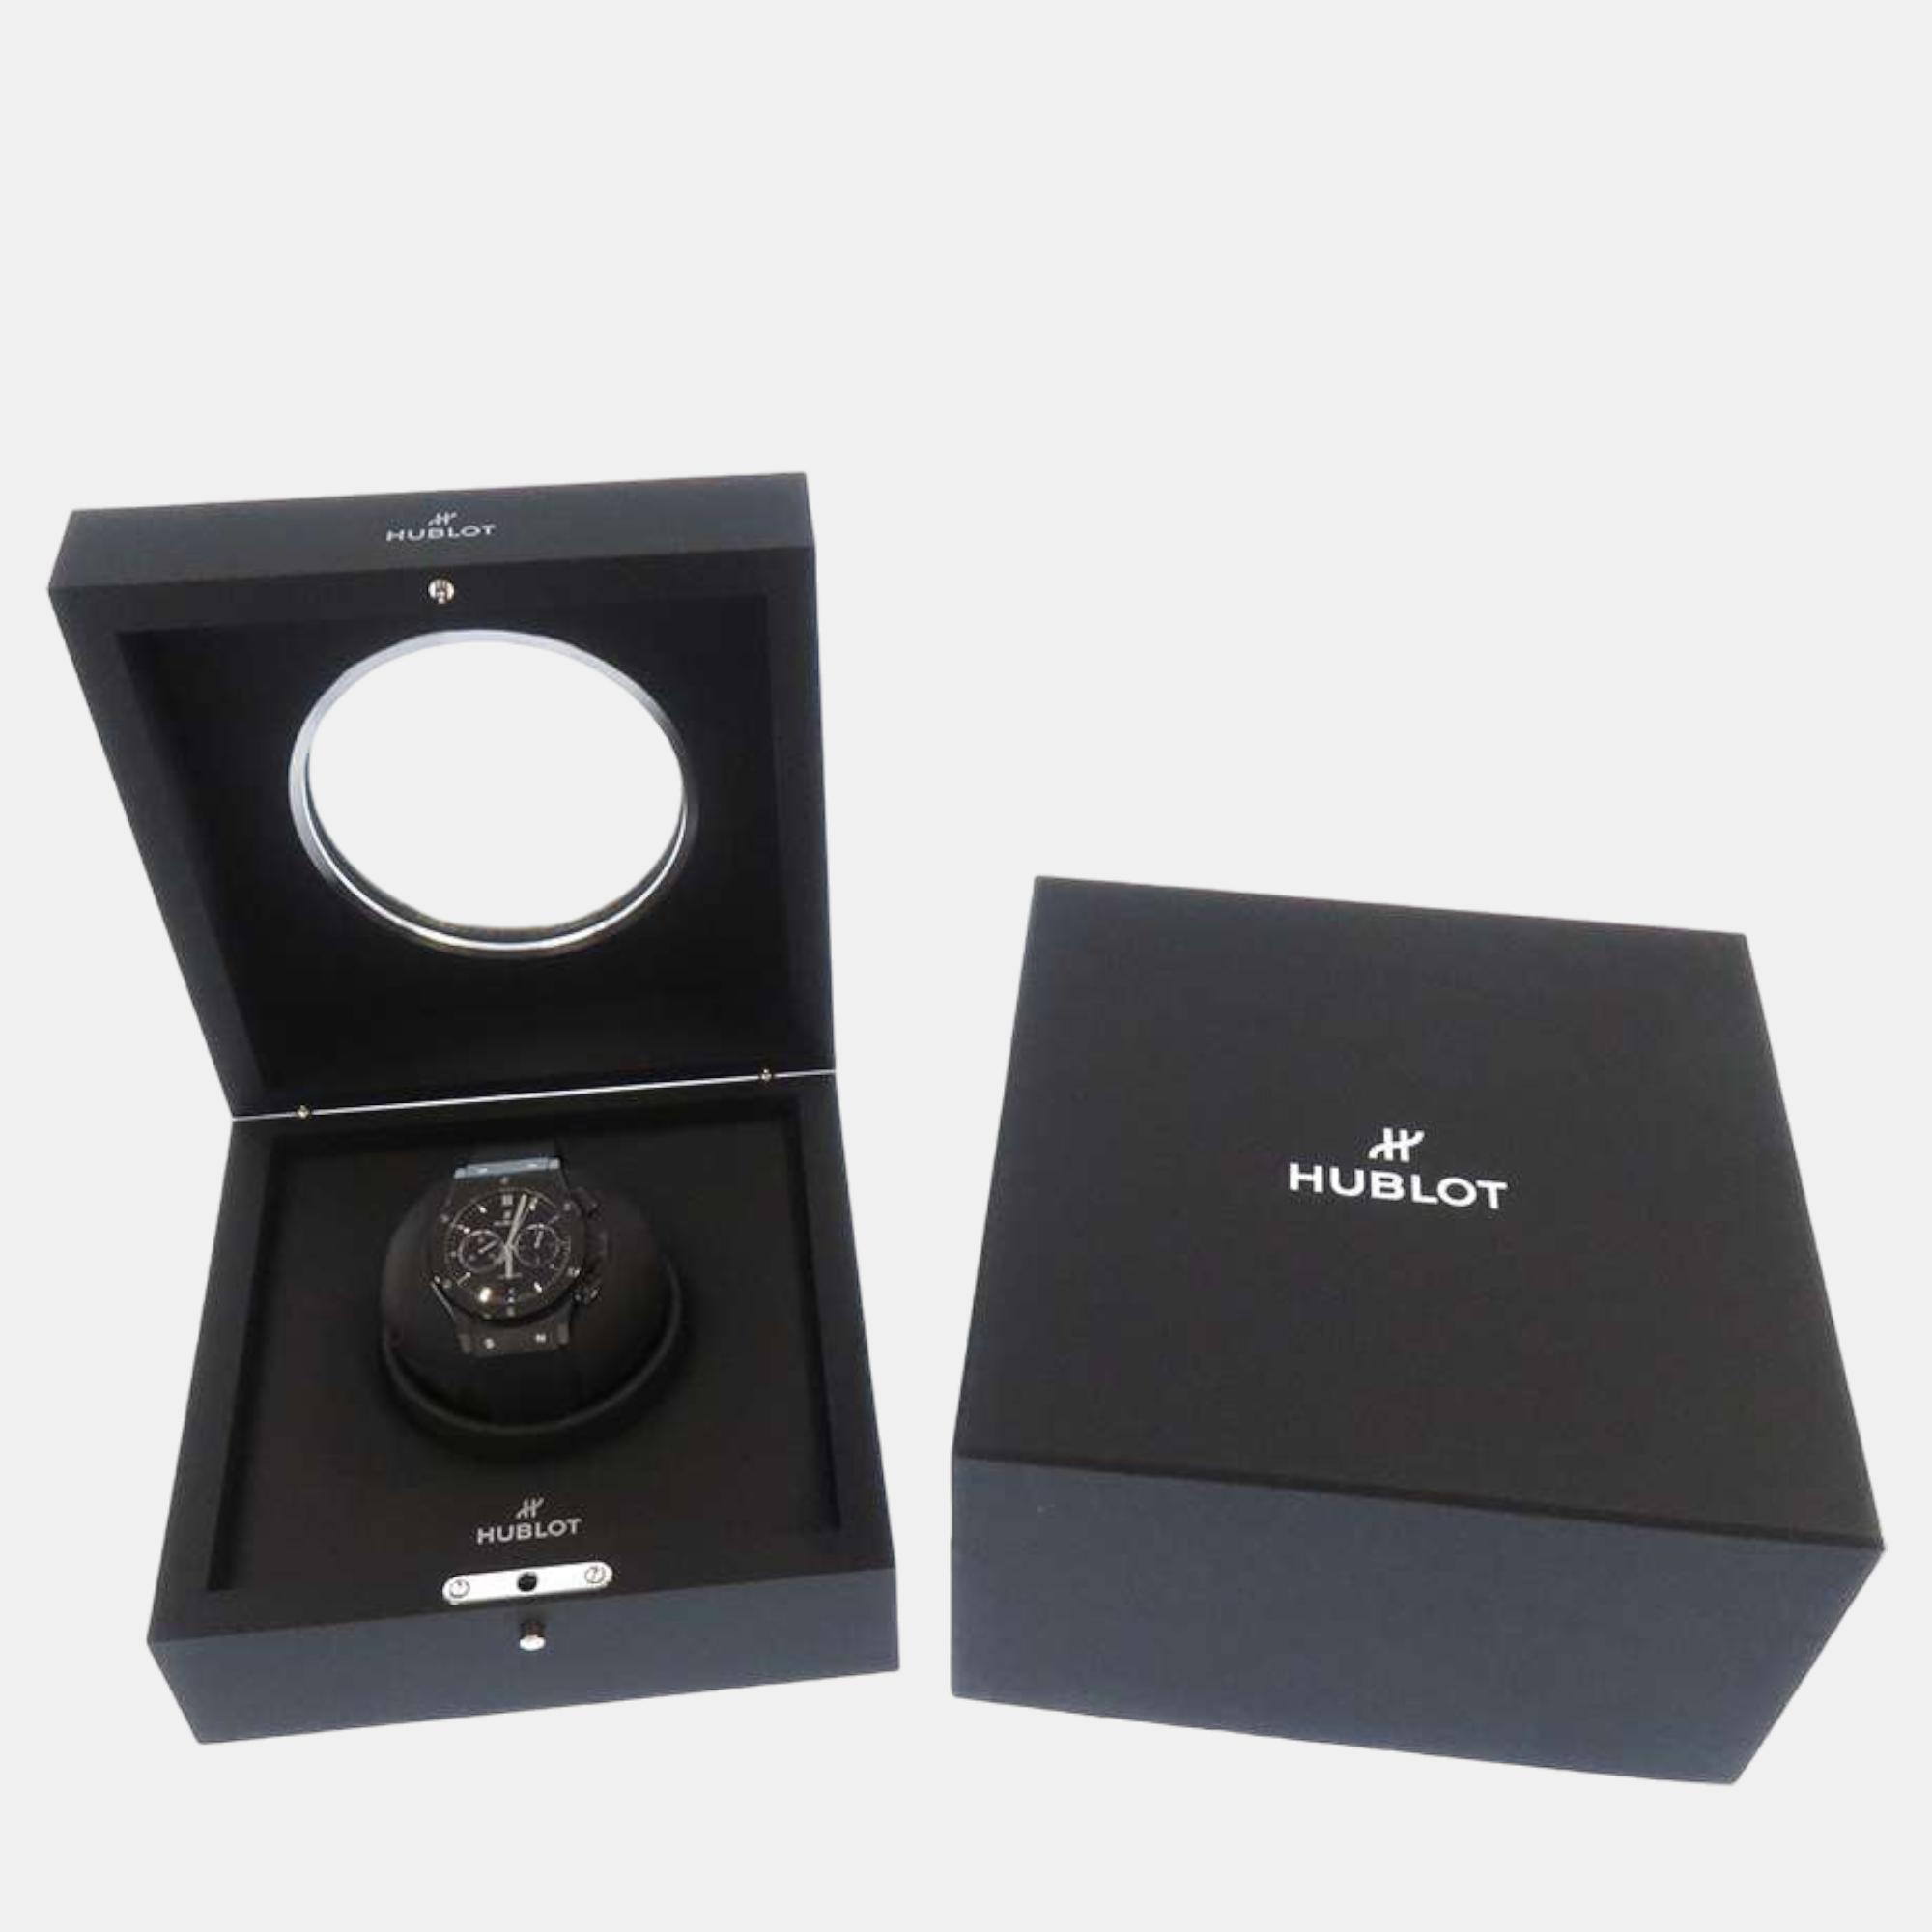 Hublot Black Ceramic Classic Fusion 541.CM.1171.RX Automatic Men's Wristwatch 42 Mm